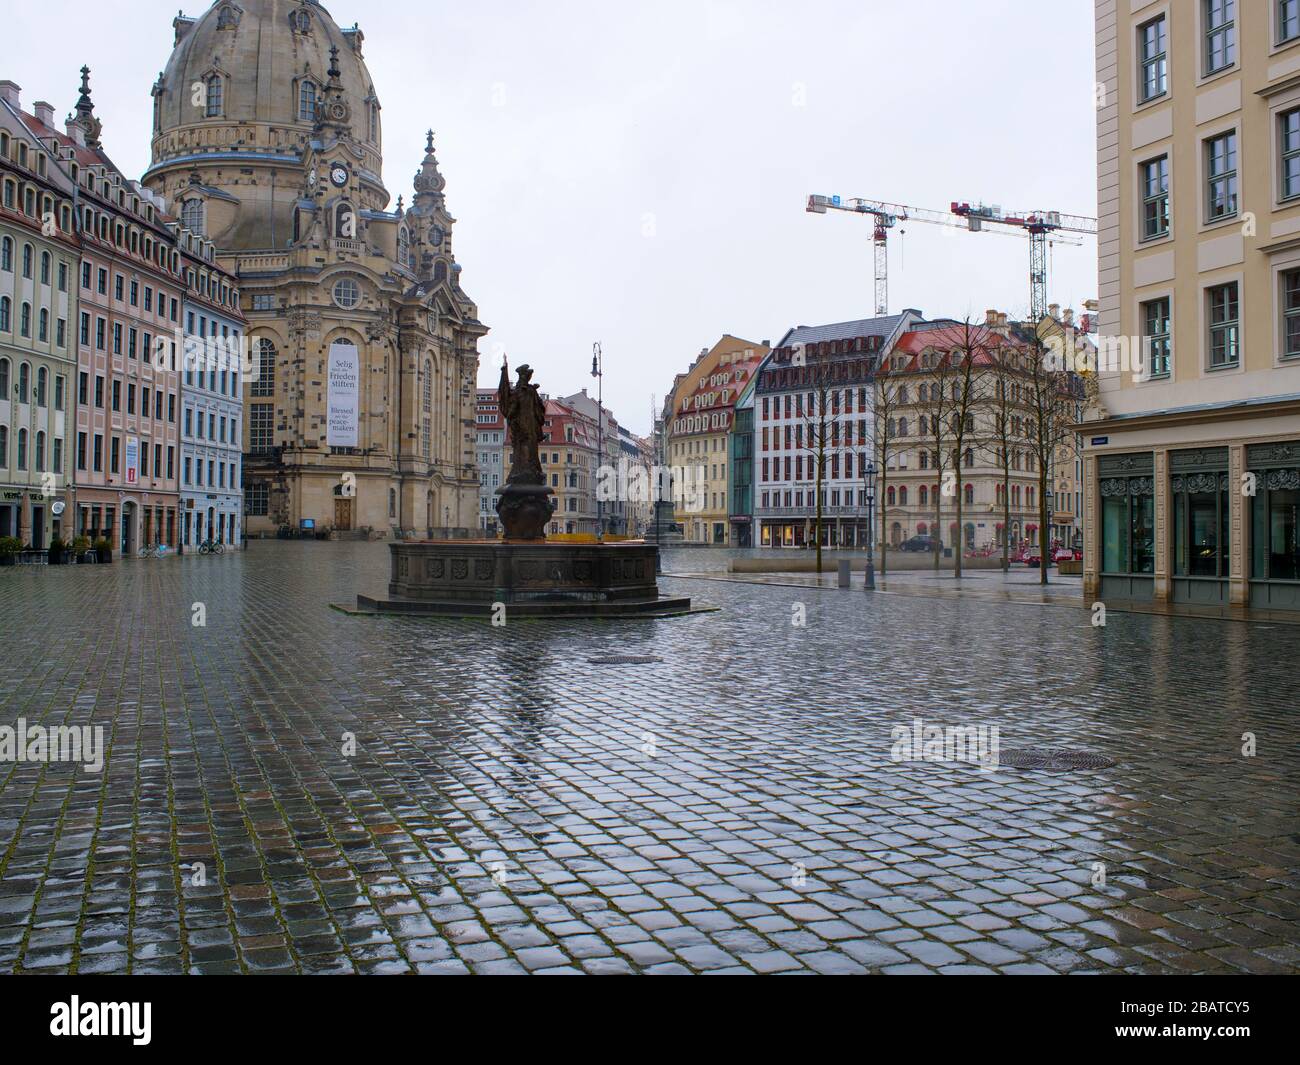 Dresden Neumarkt während Coronavirus Lockdown und Regenwetter Gastronomia Restaurants COVID-19 Ausgangsperre Foto Stock